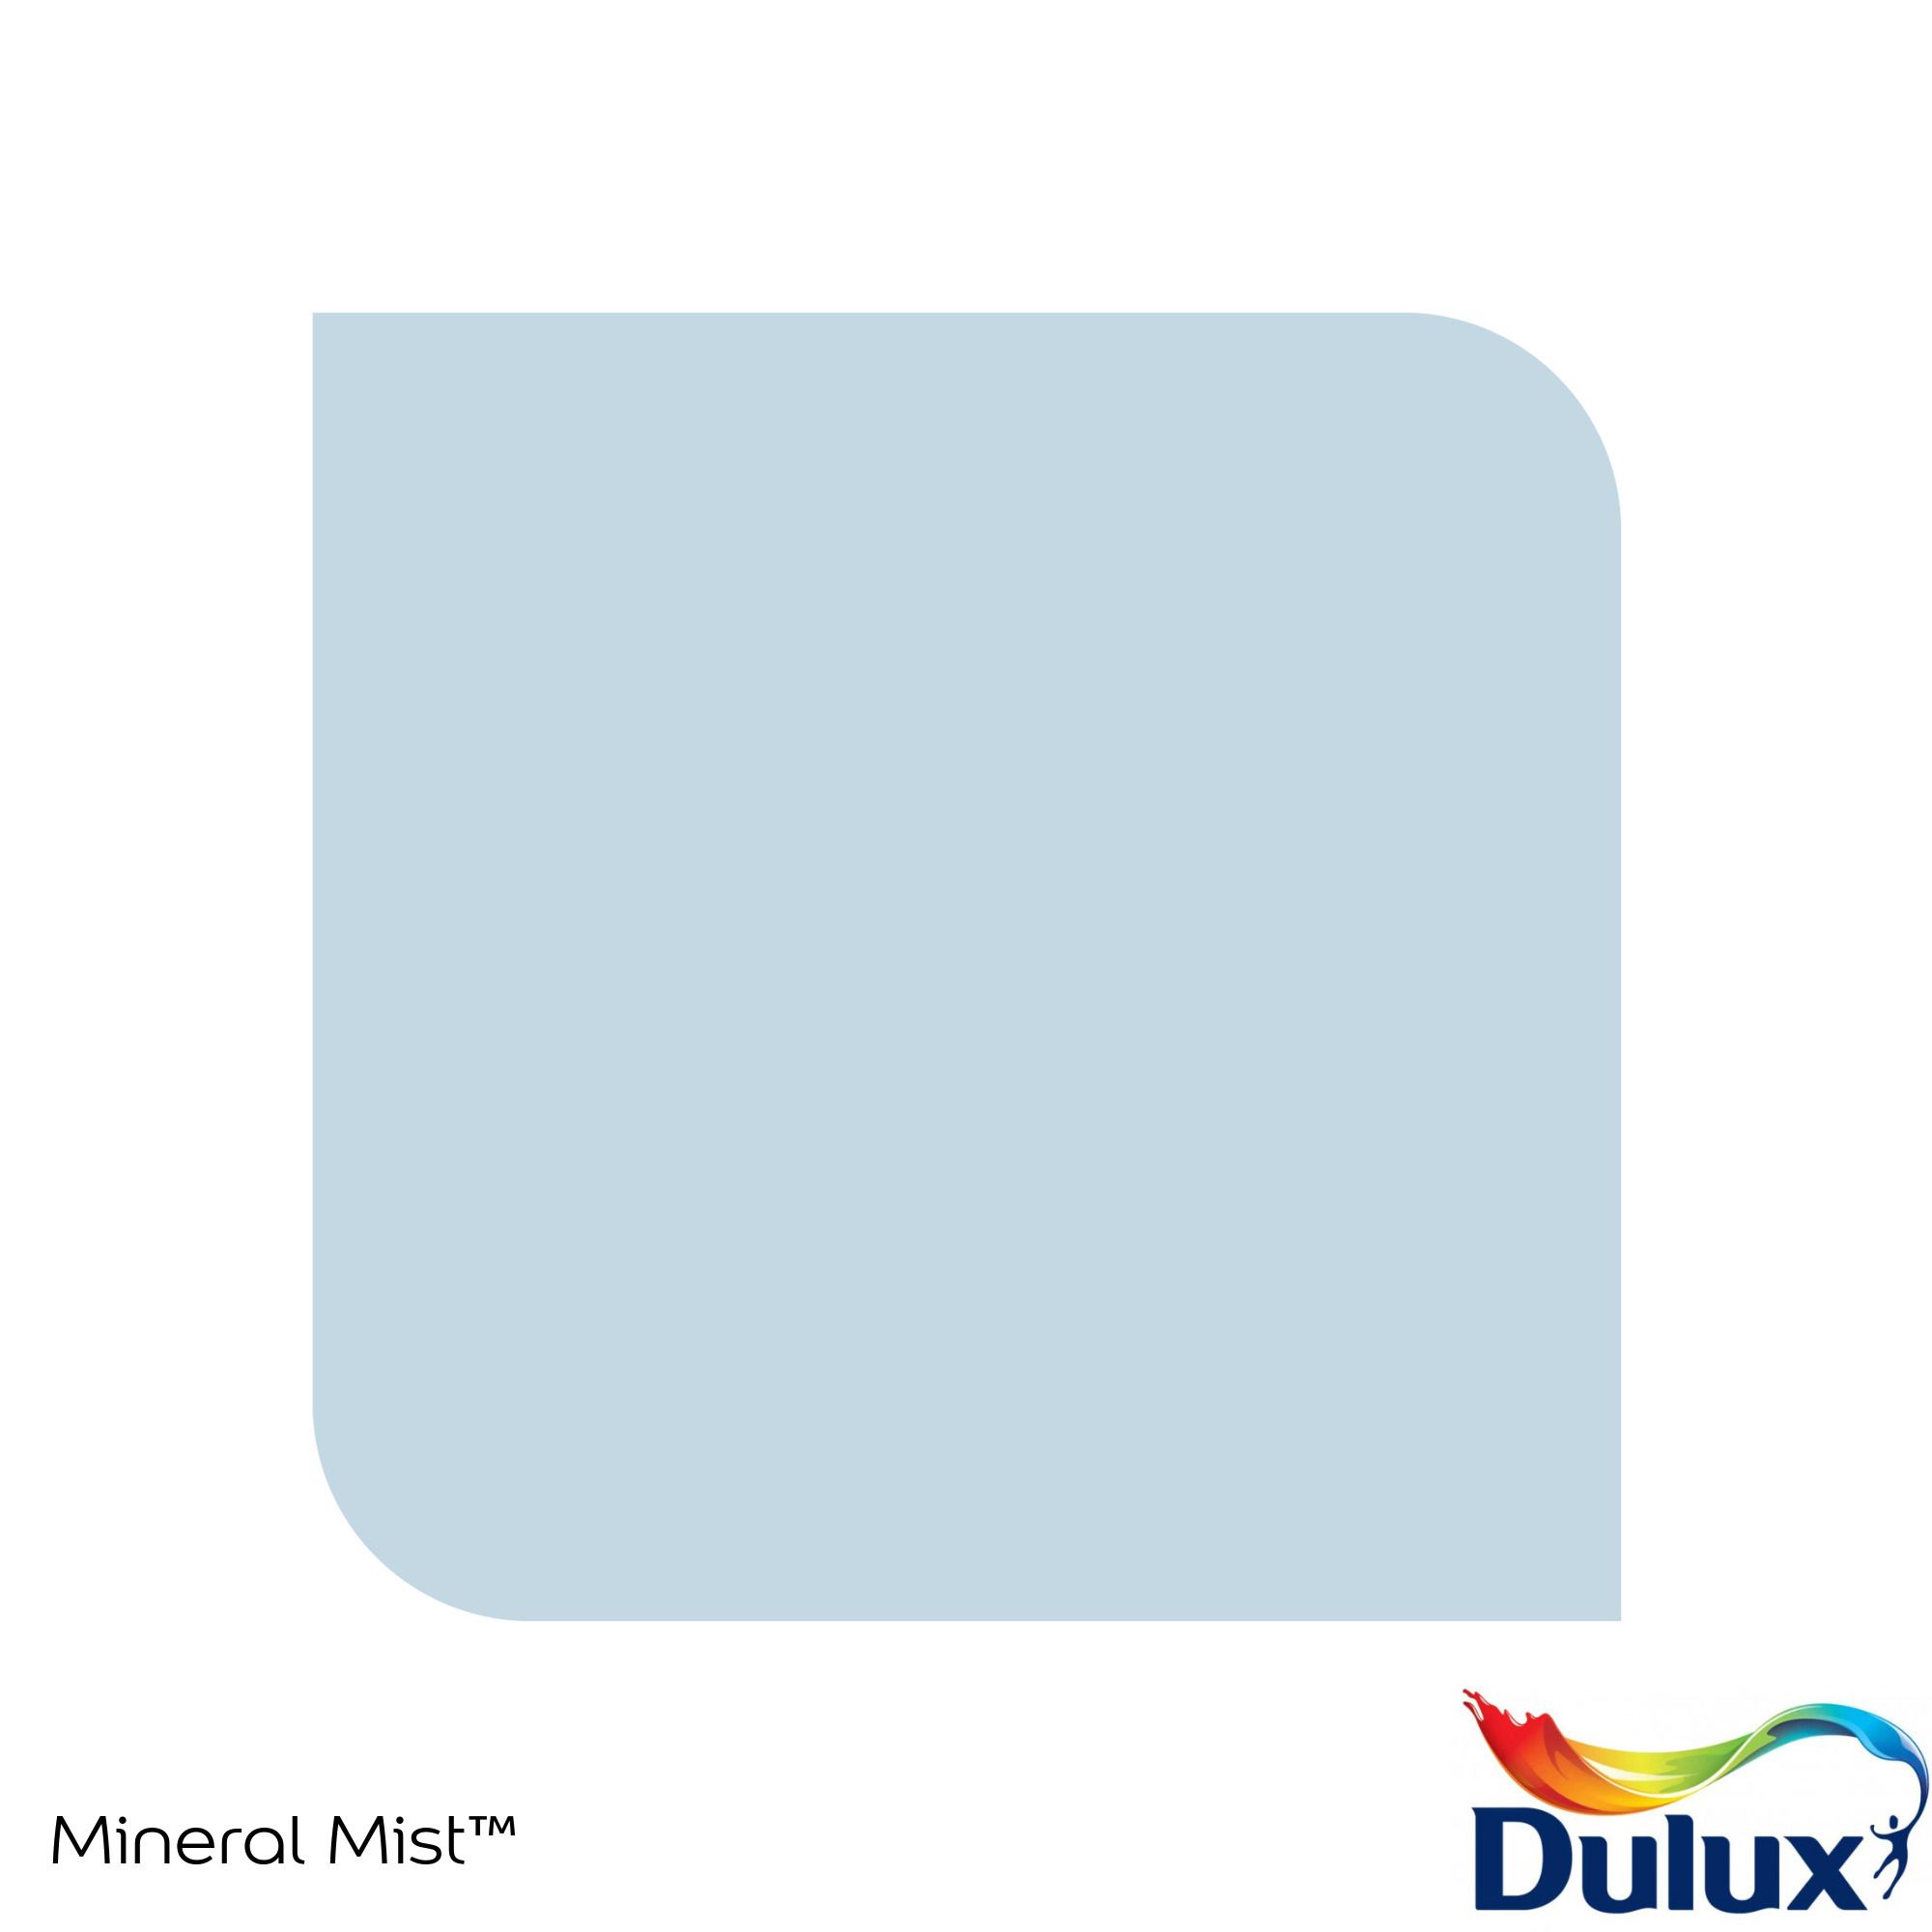 Dulux Standard Mineral mist Matt Emulsion paint, 30ml Tester pot